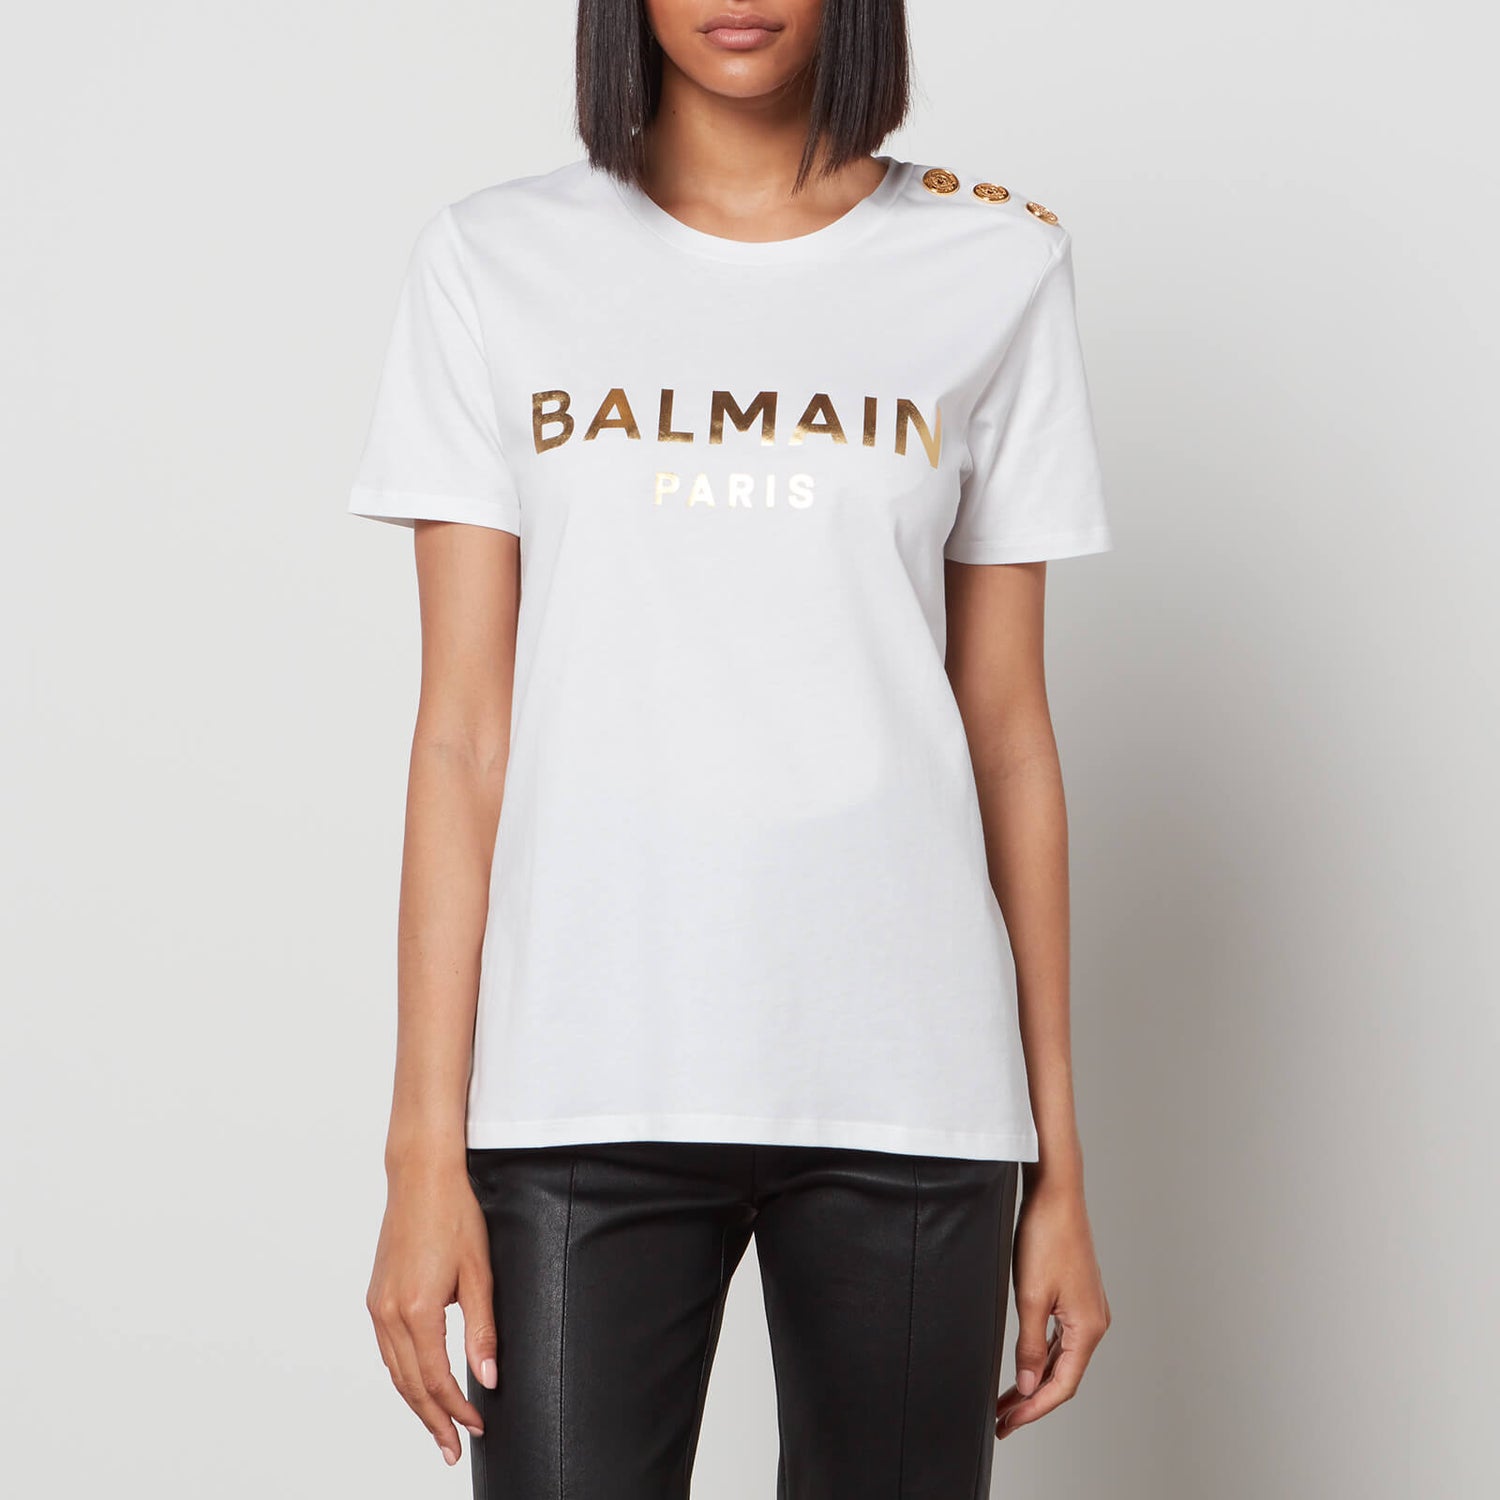 Balmain Women's 3 Buttoned Metallic Balmain T-Shirt - White/Gold - XS